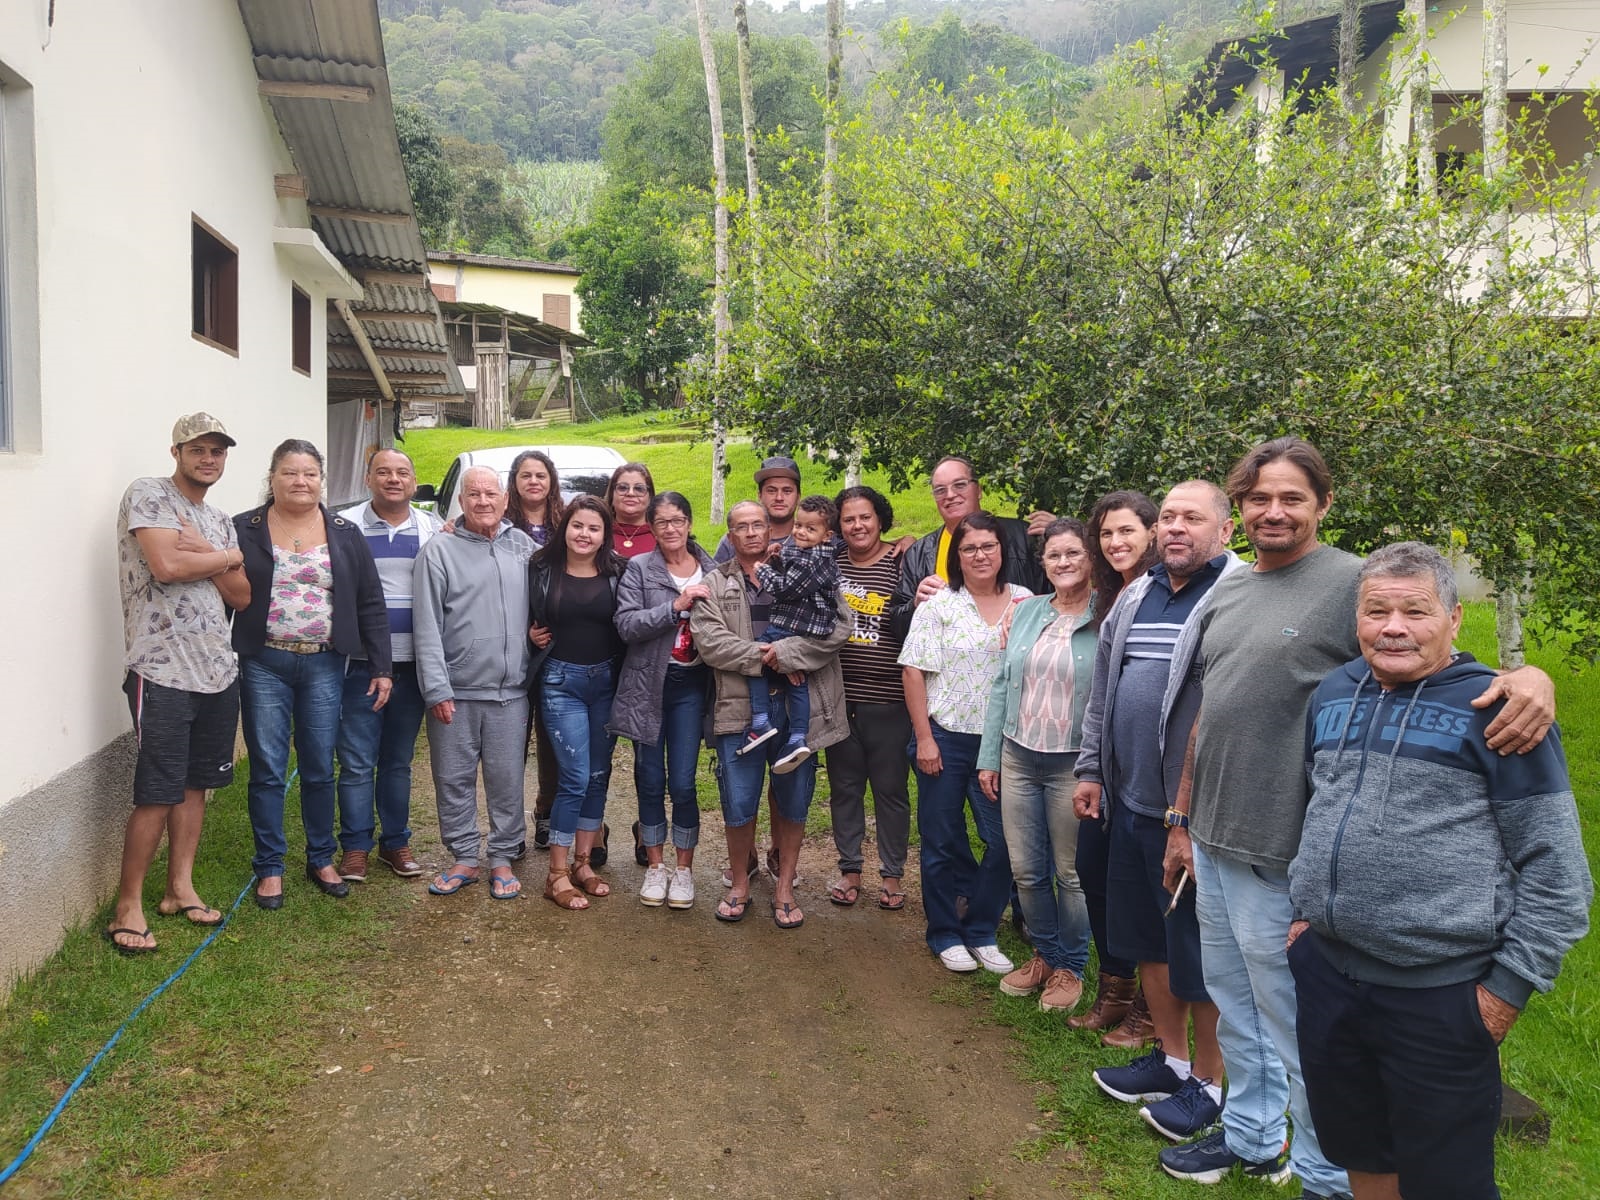 Morador de Araguaya reencontra familiares após 50 anos sem contato